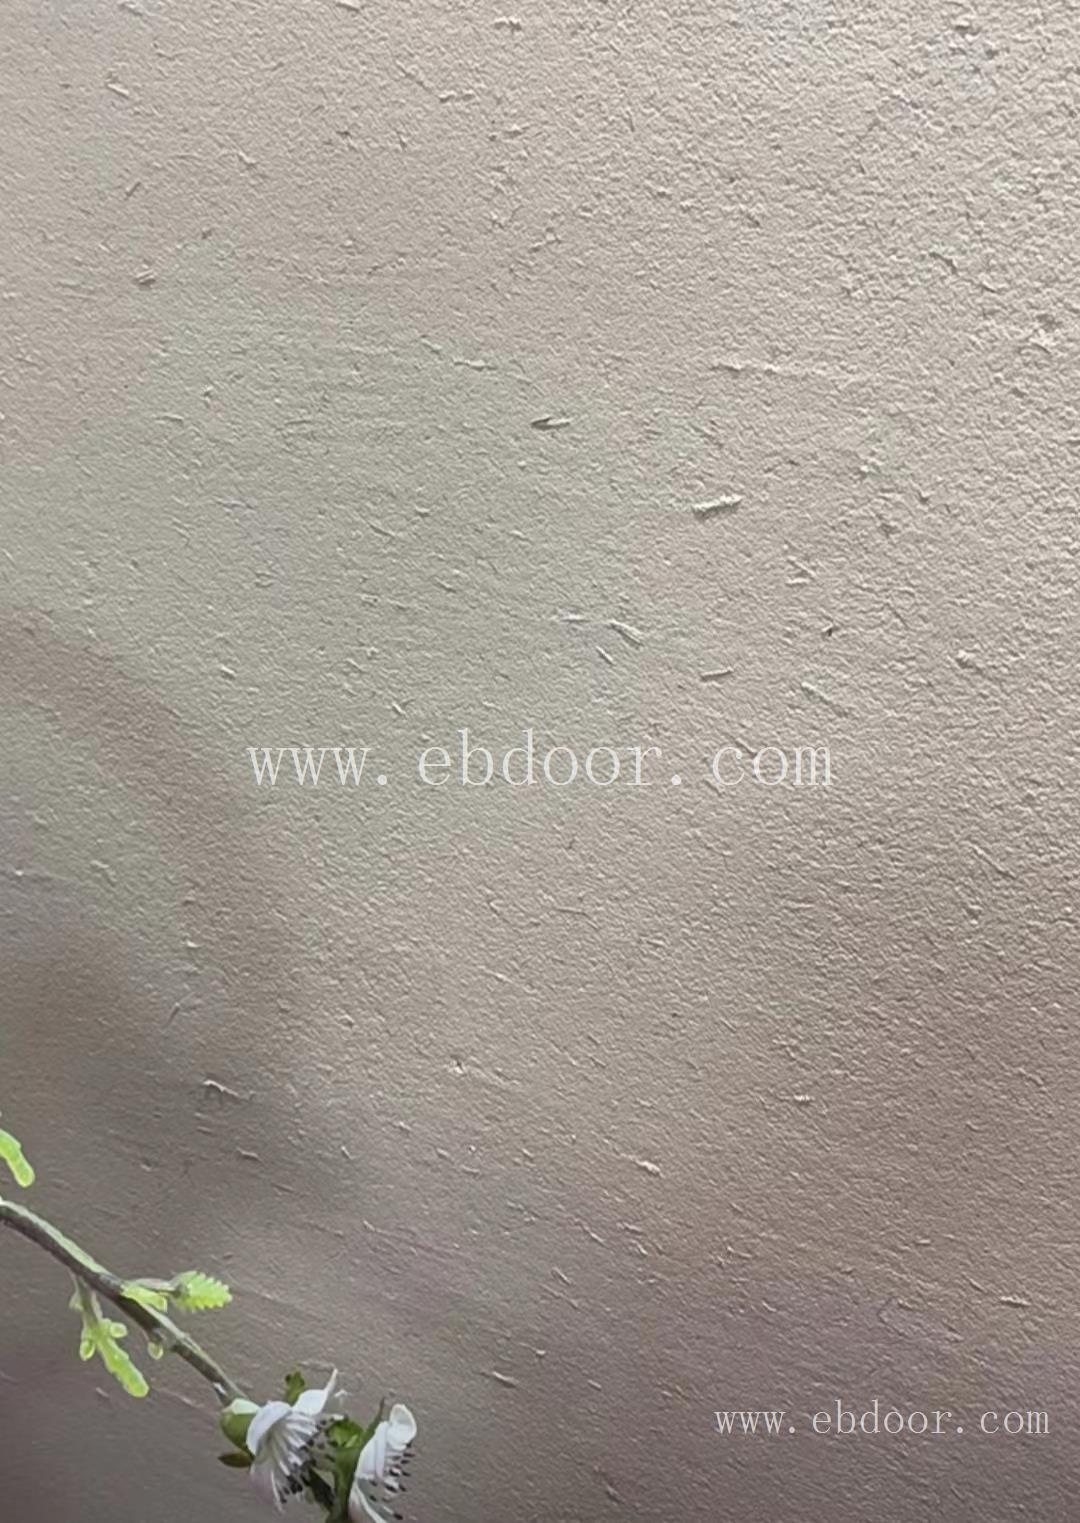 泸州外墙稻草艺术漆多少钱